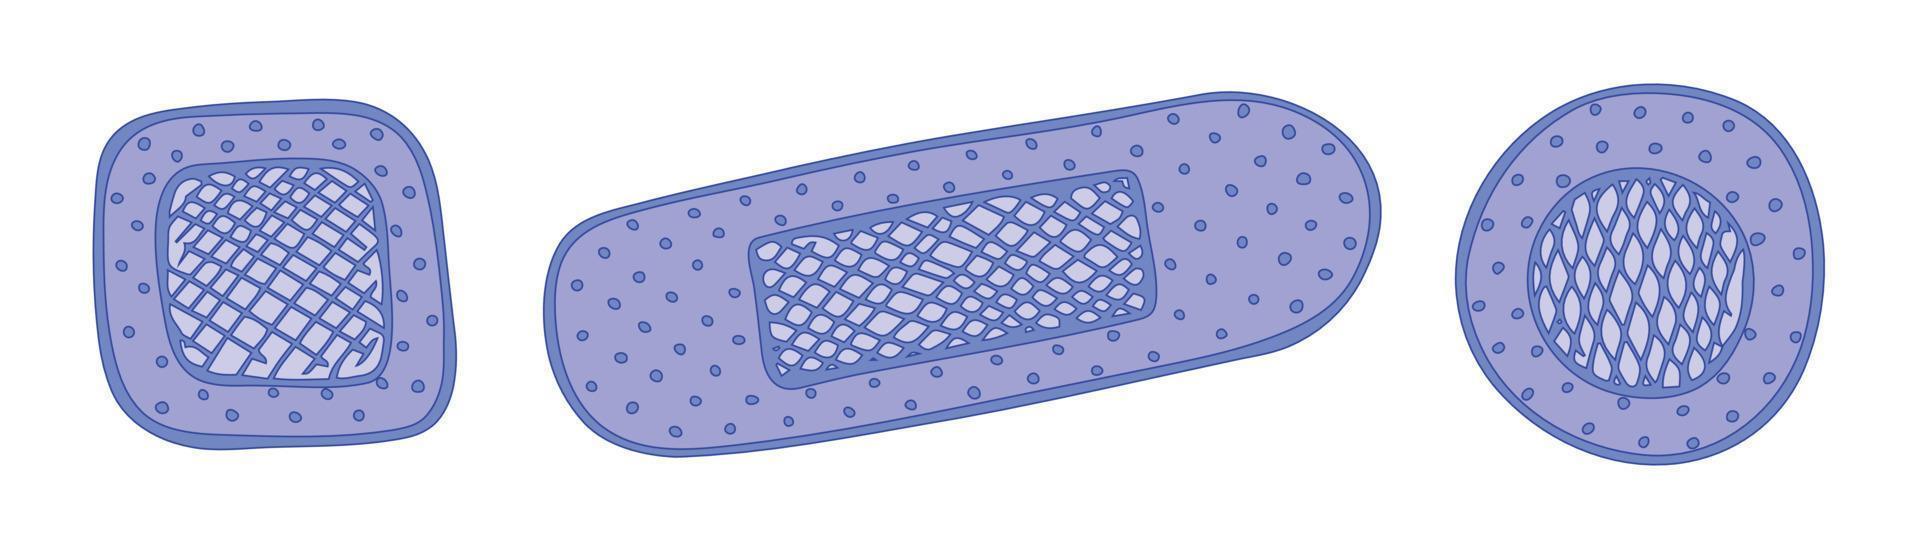 bendaggio adesivo come concetto di pronto soccorso medico. clipart medica disegnata a mano. per stampa, web, design, arredamento, logo. vettore